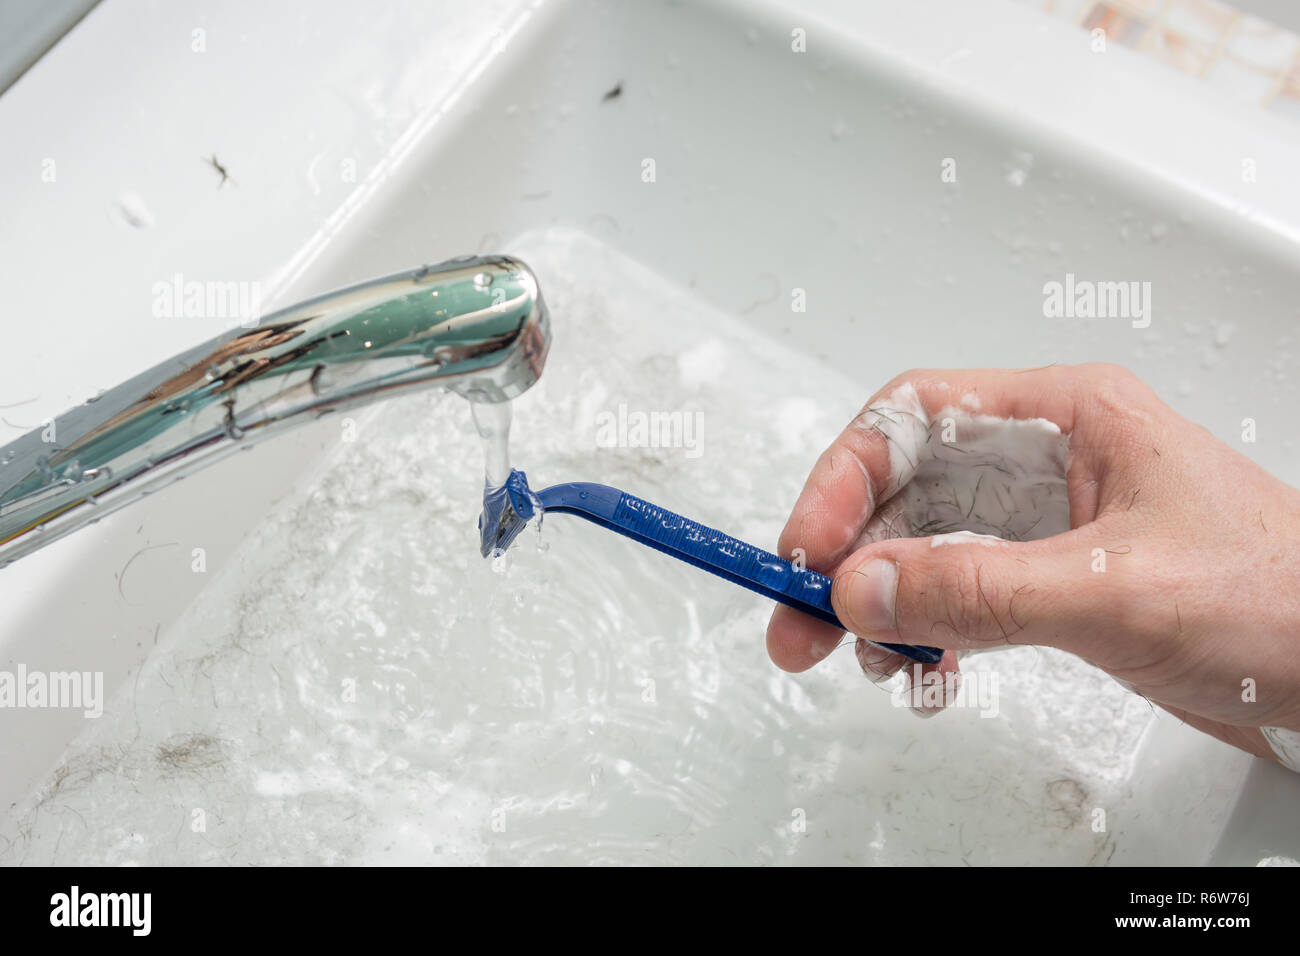 La main de l'homme lave le rasoir sous le jet d'eau, close-up sur le dessus  Photo Stock - Alamy